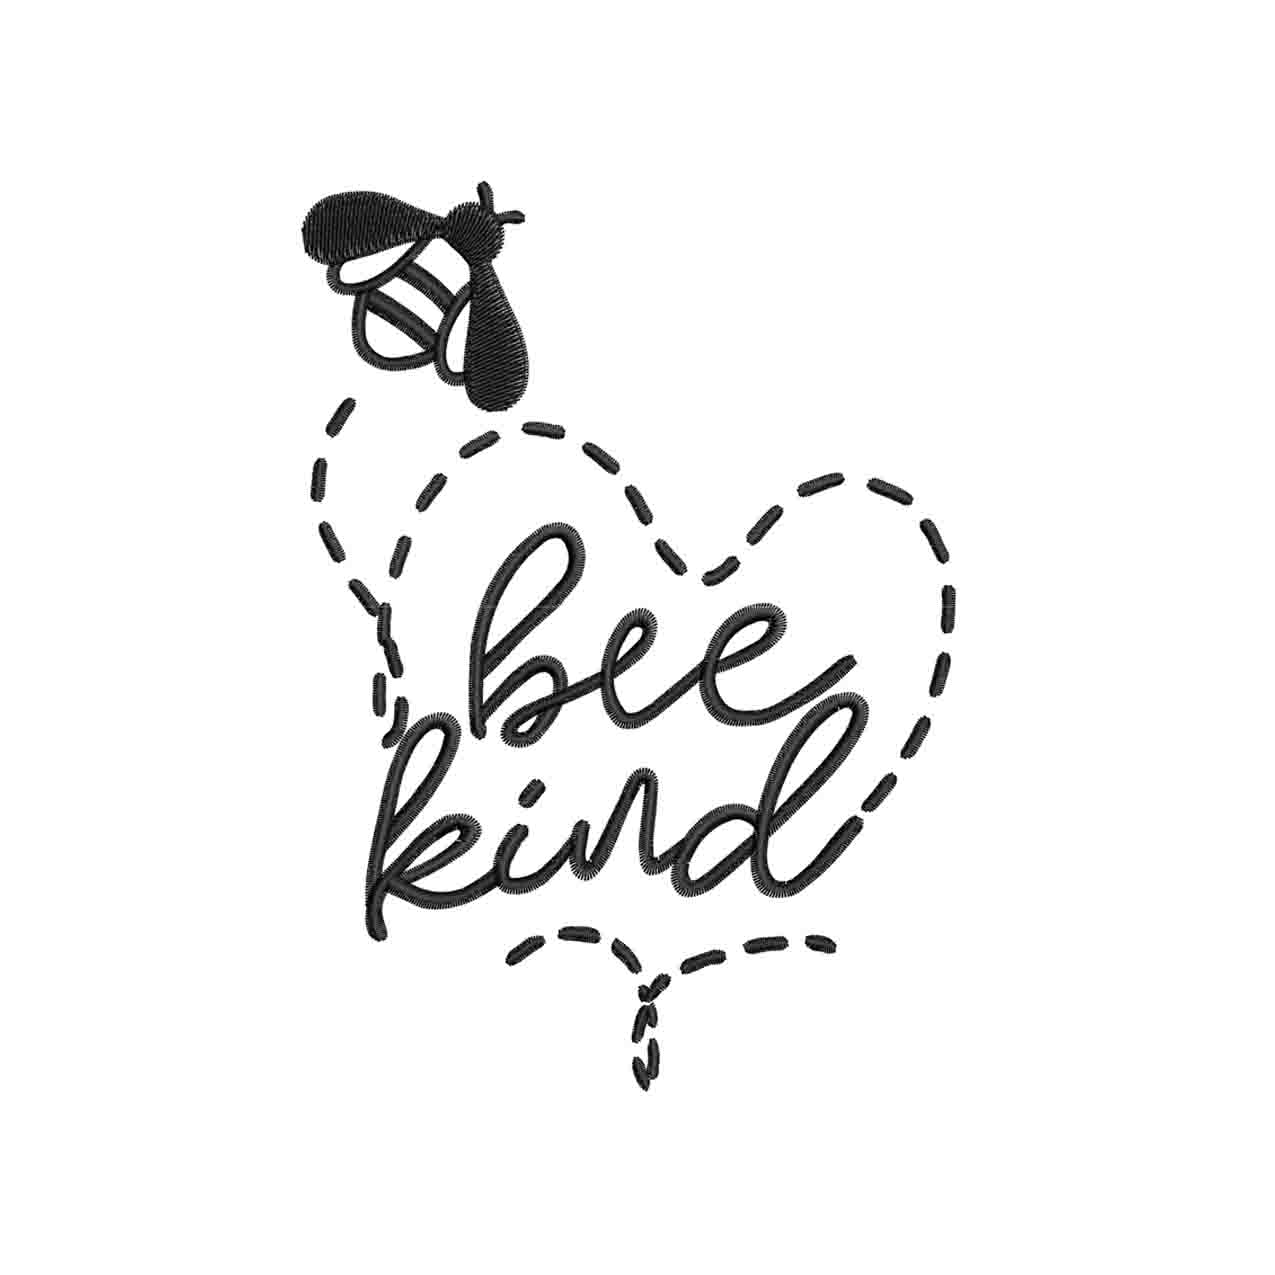 bee kind